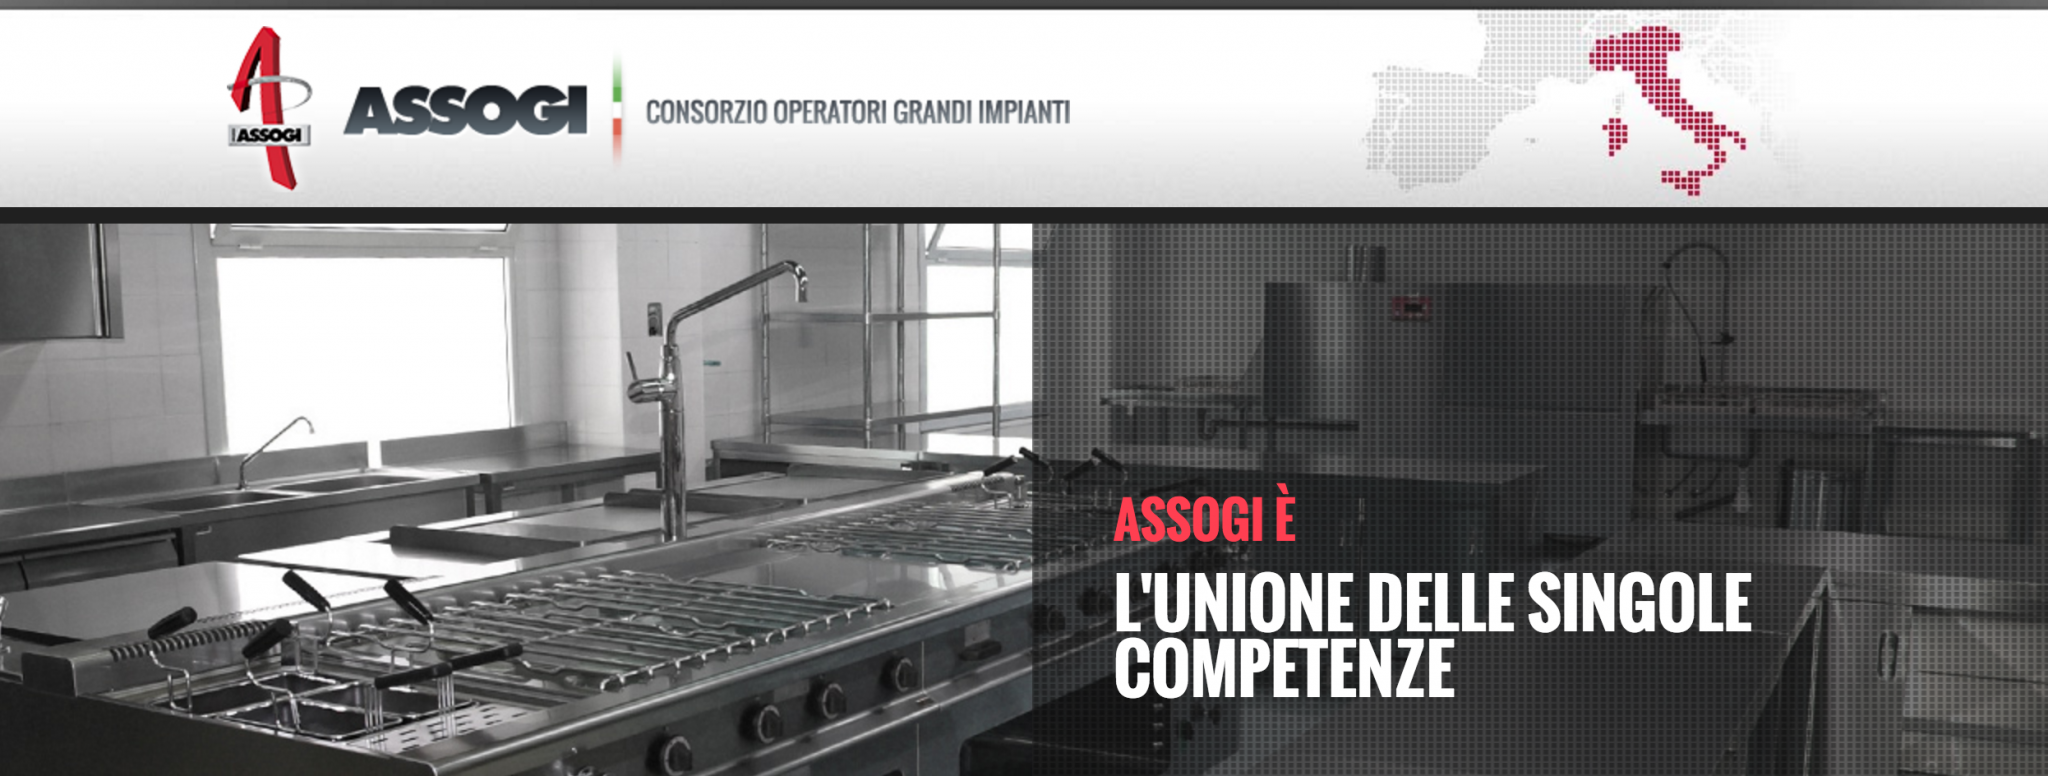 Immagine di copertina di Consorzio ASSOGI: la qualità italiana degli impianti di ristorazione